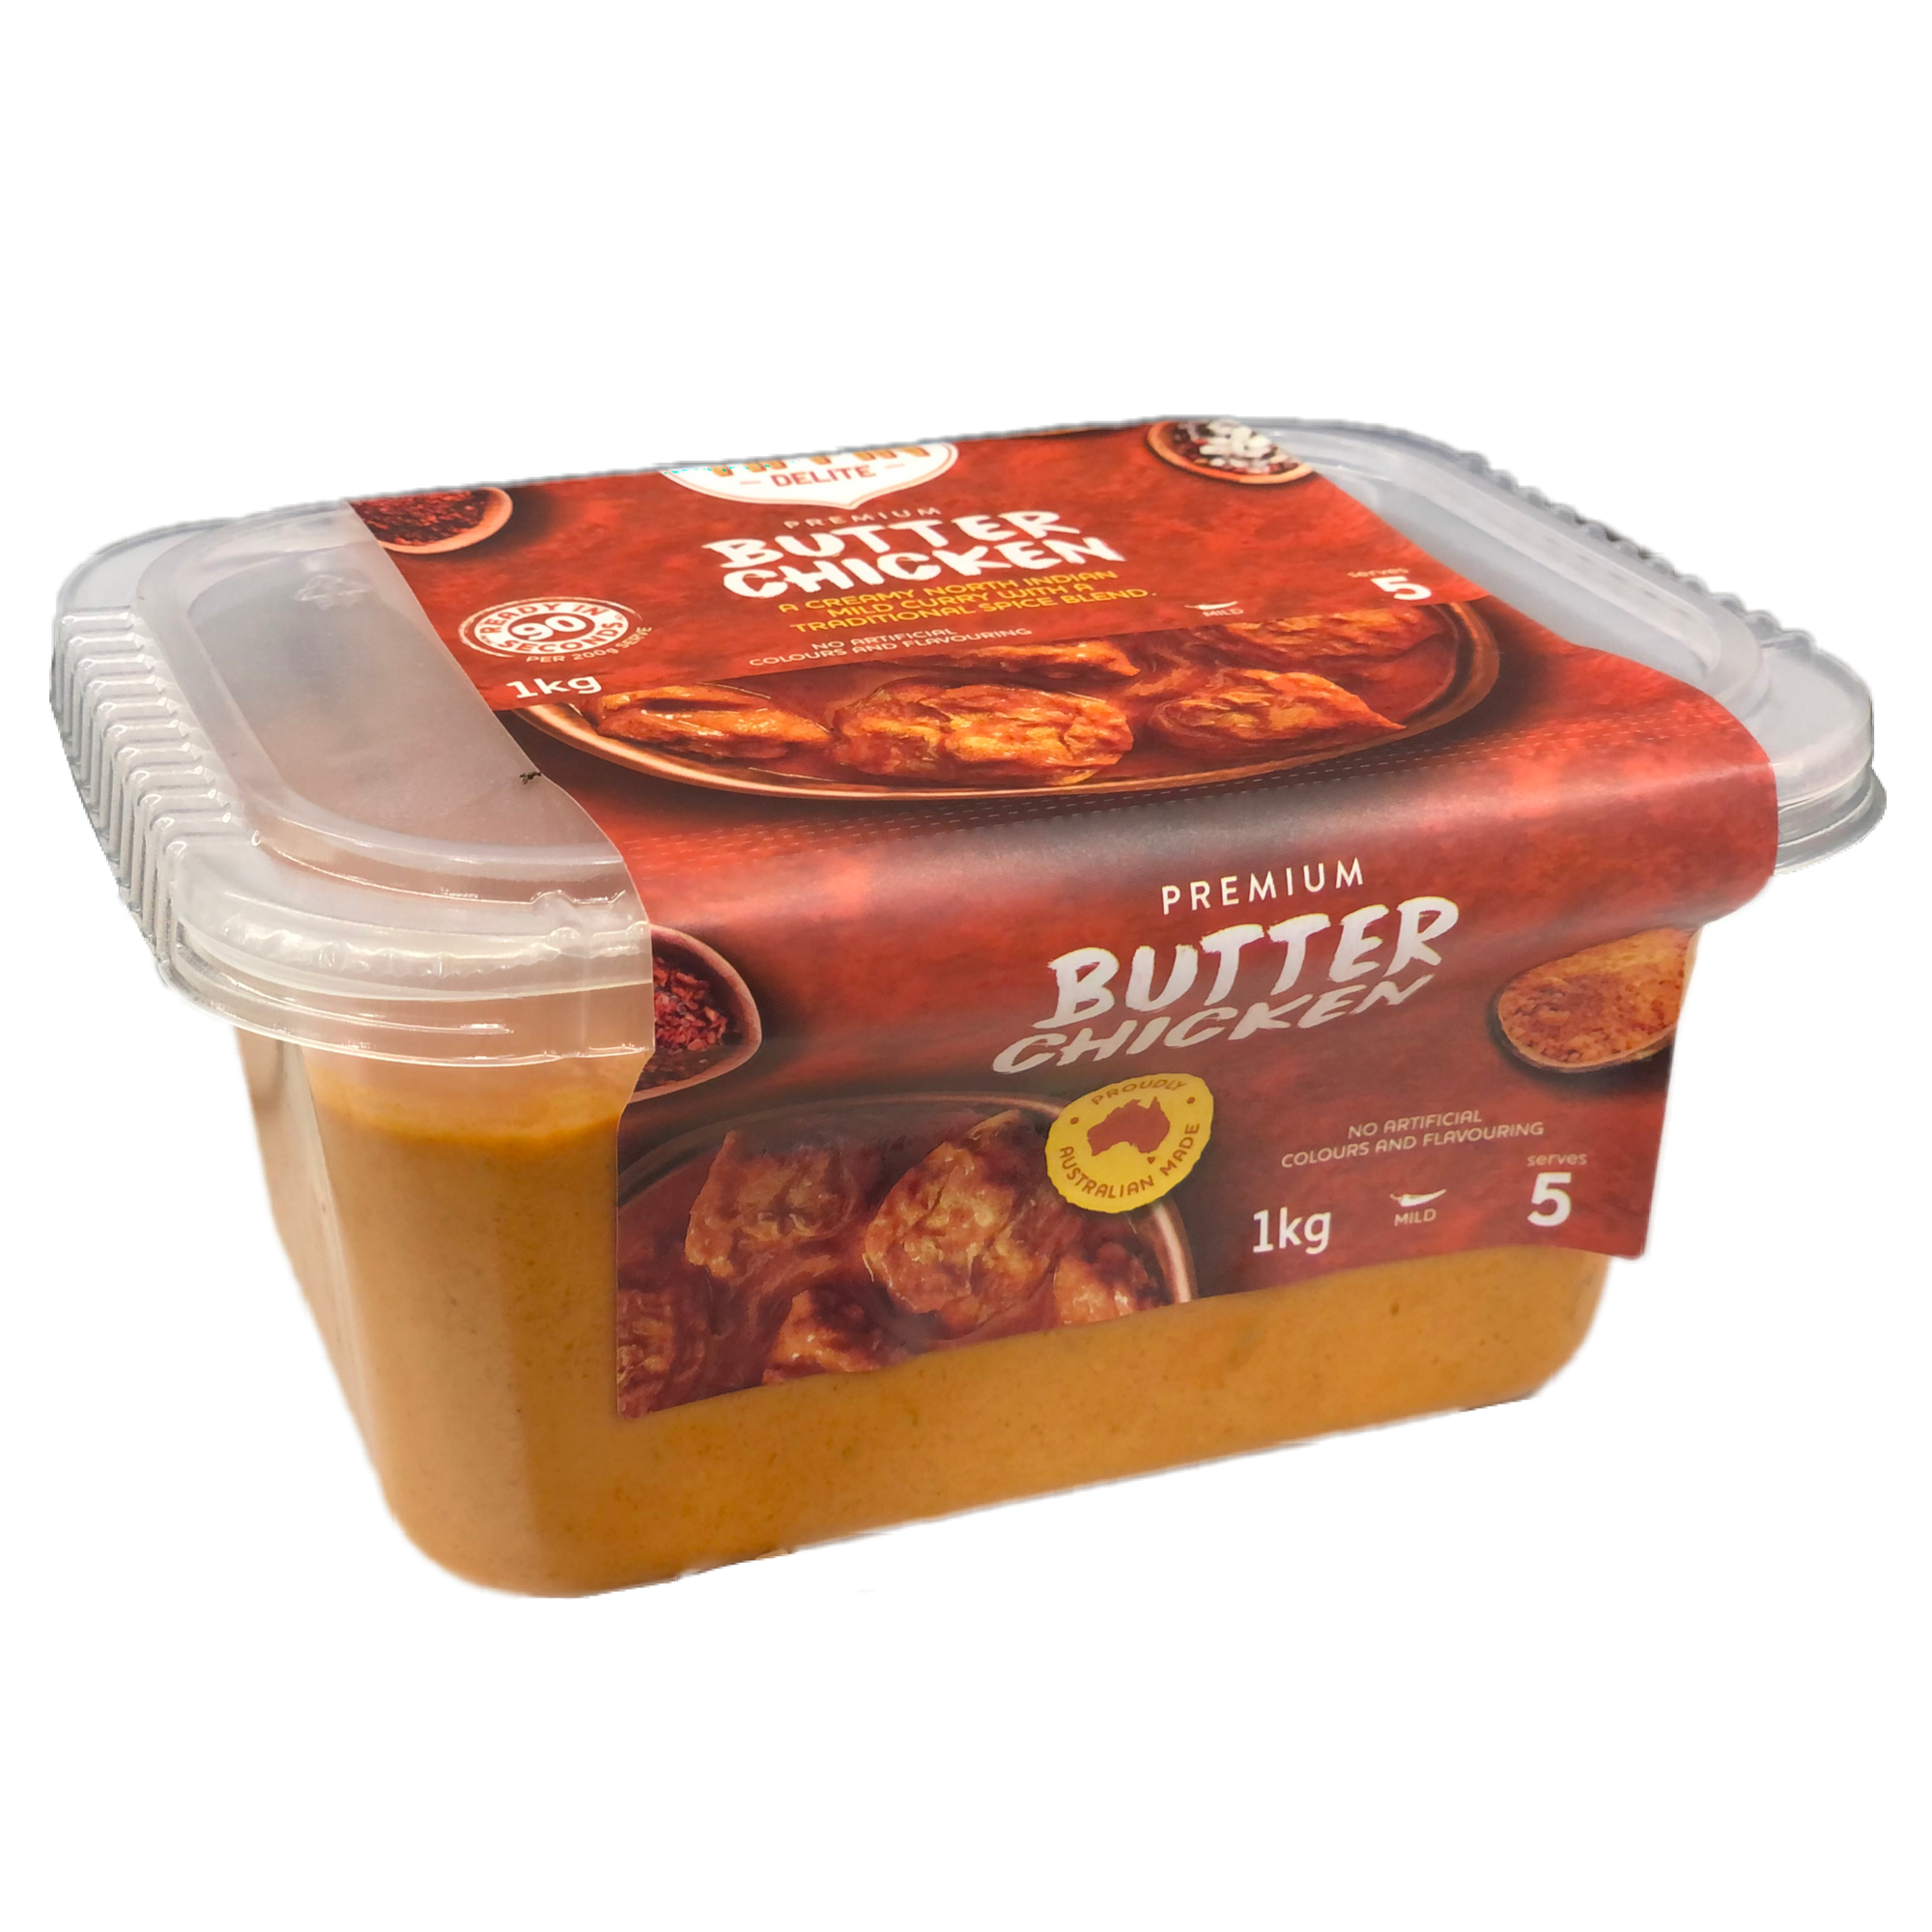 Tiffin Premium Butter Chicken  1kg